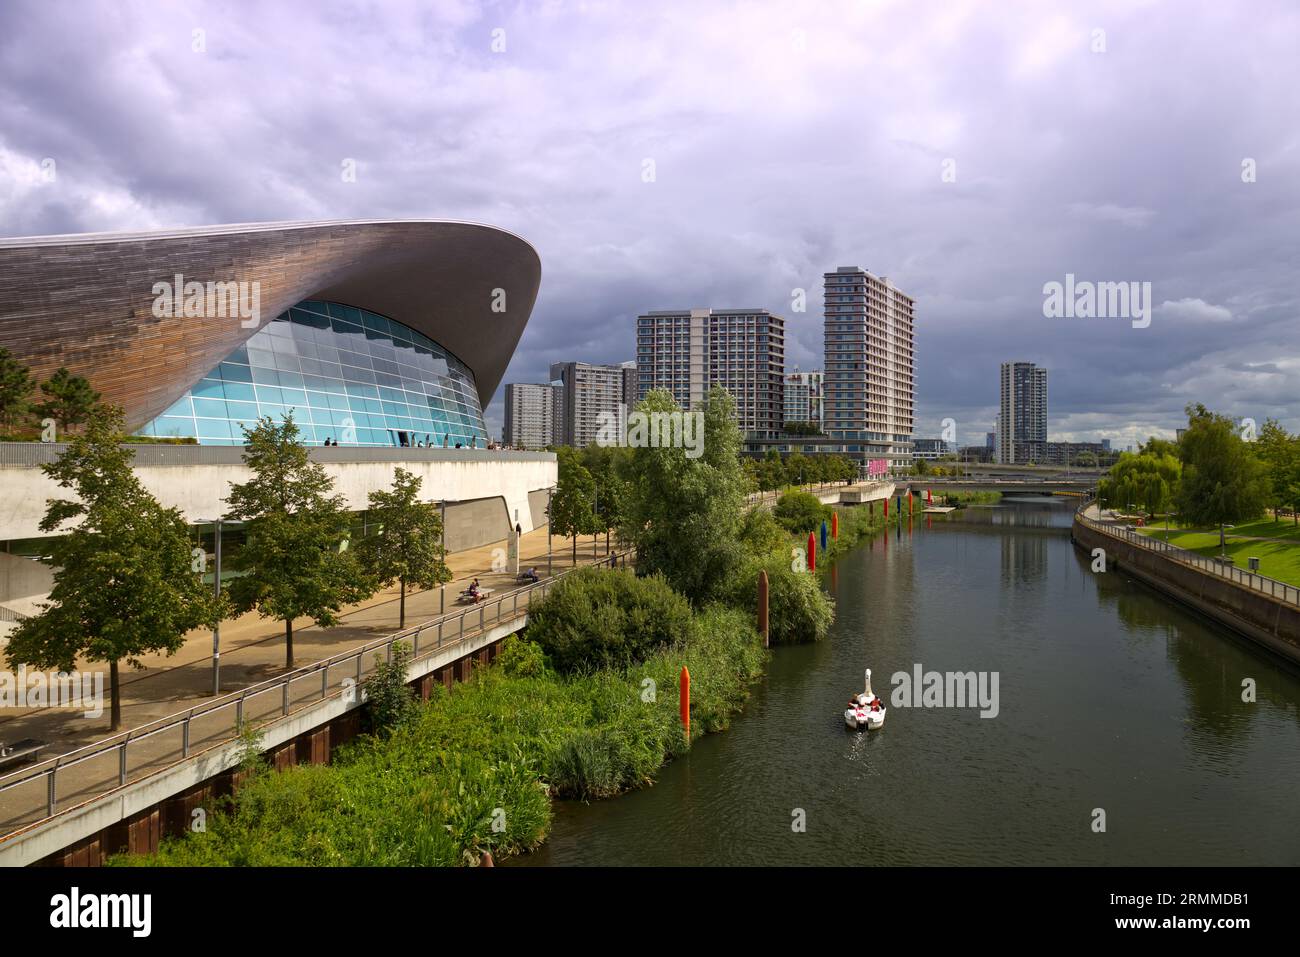 London Aquatics Centre presso il Queen Elizabeth Olympic Park, Stratford, Londra, Regno Unito Foto Stock